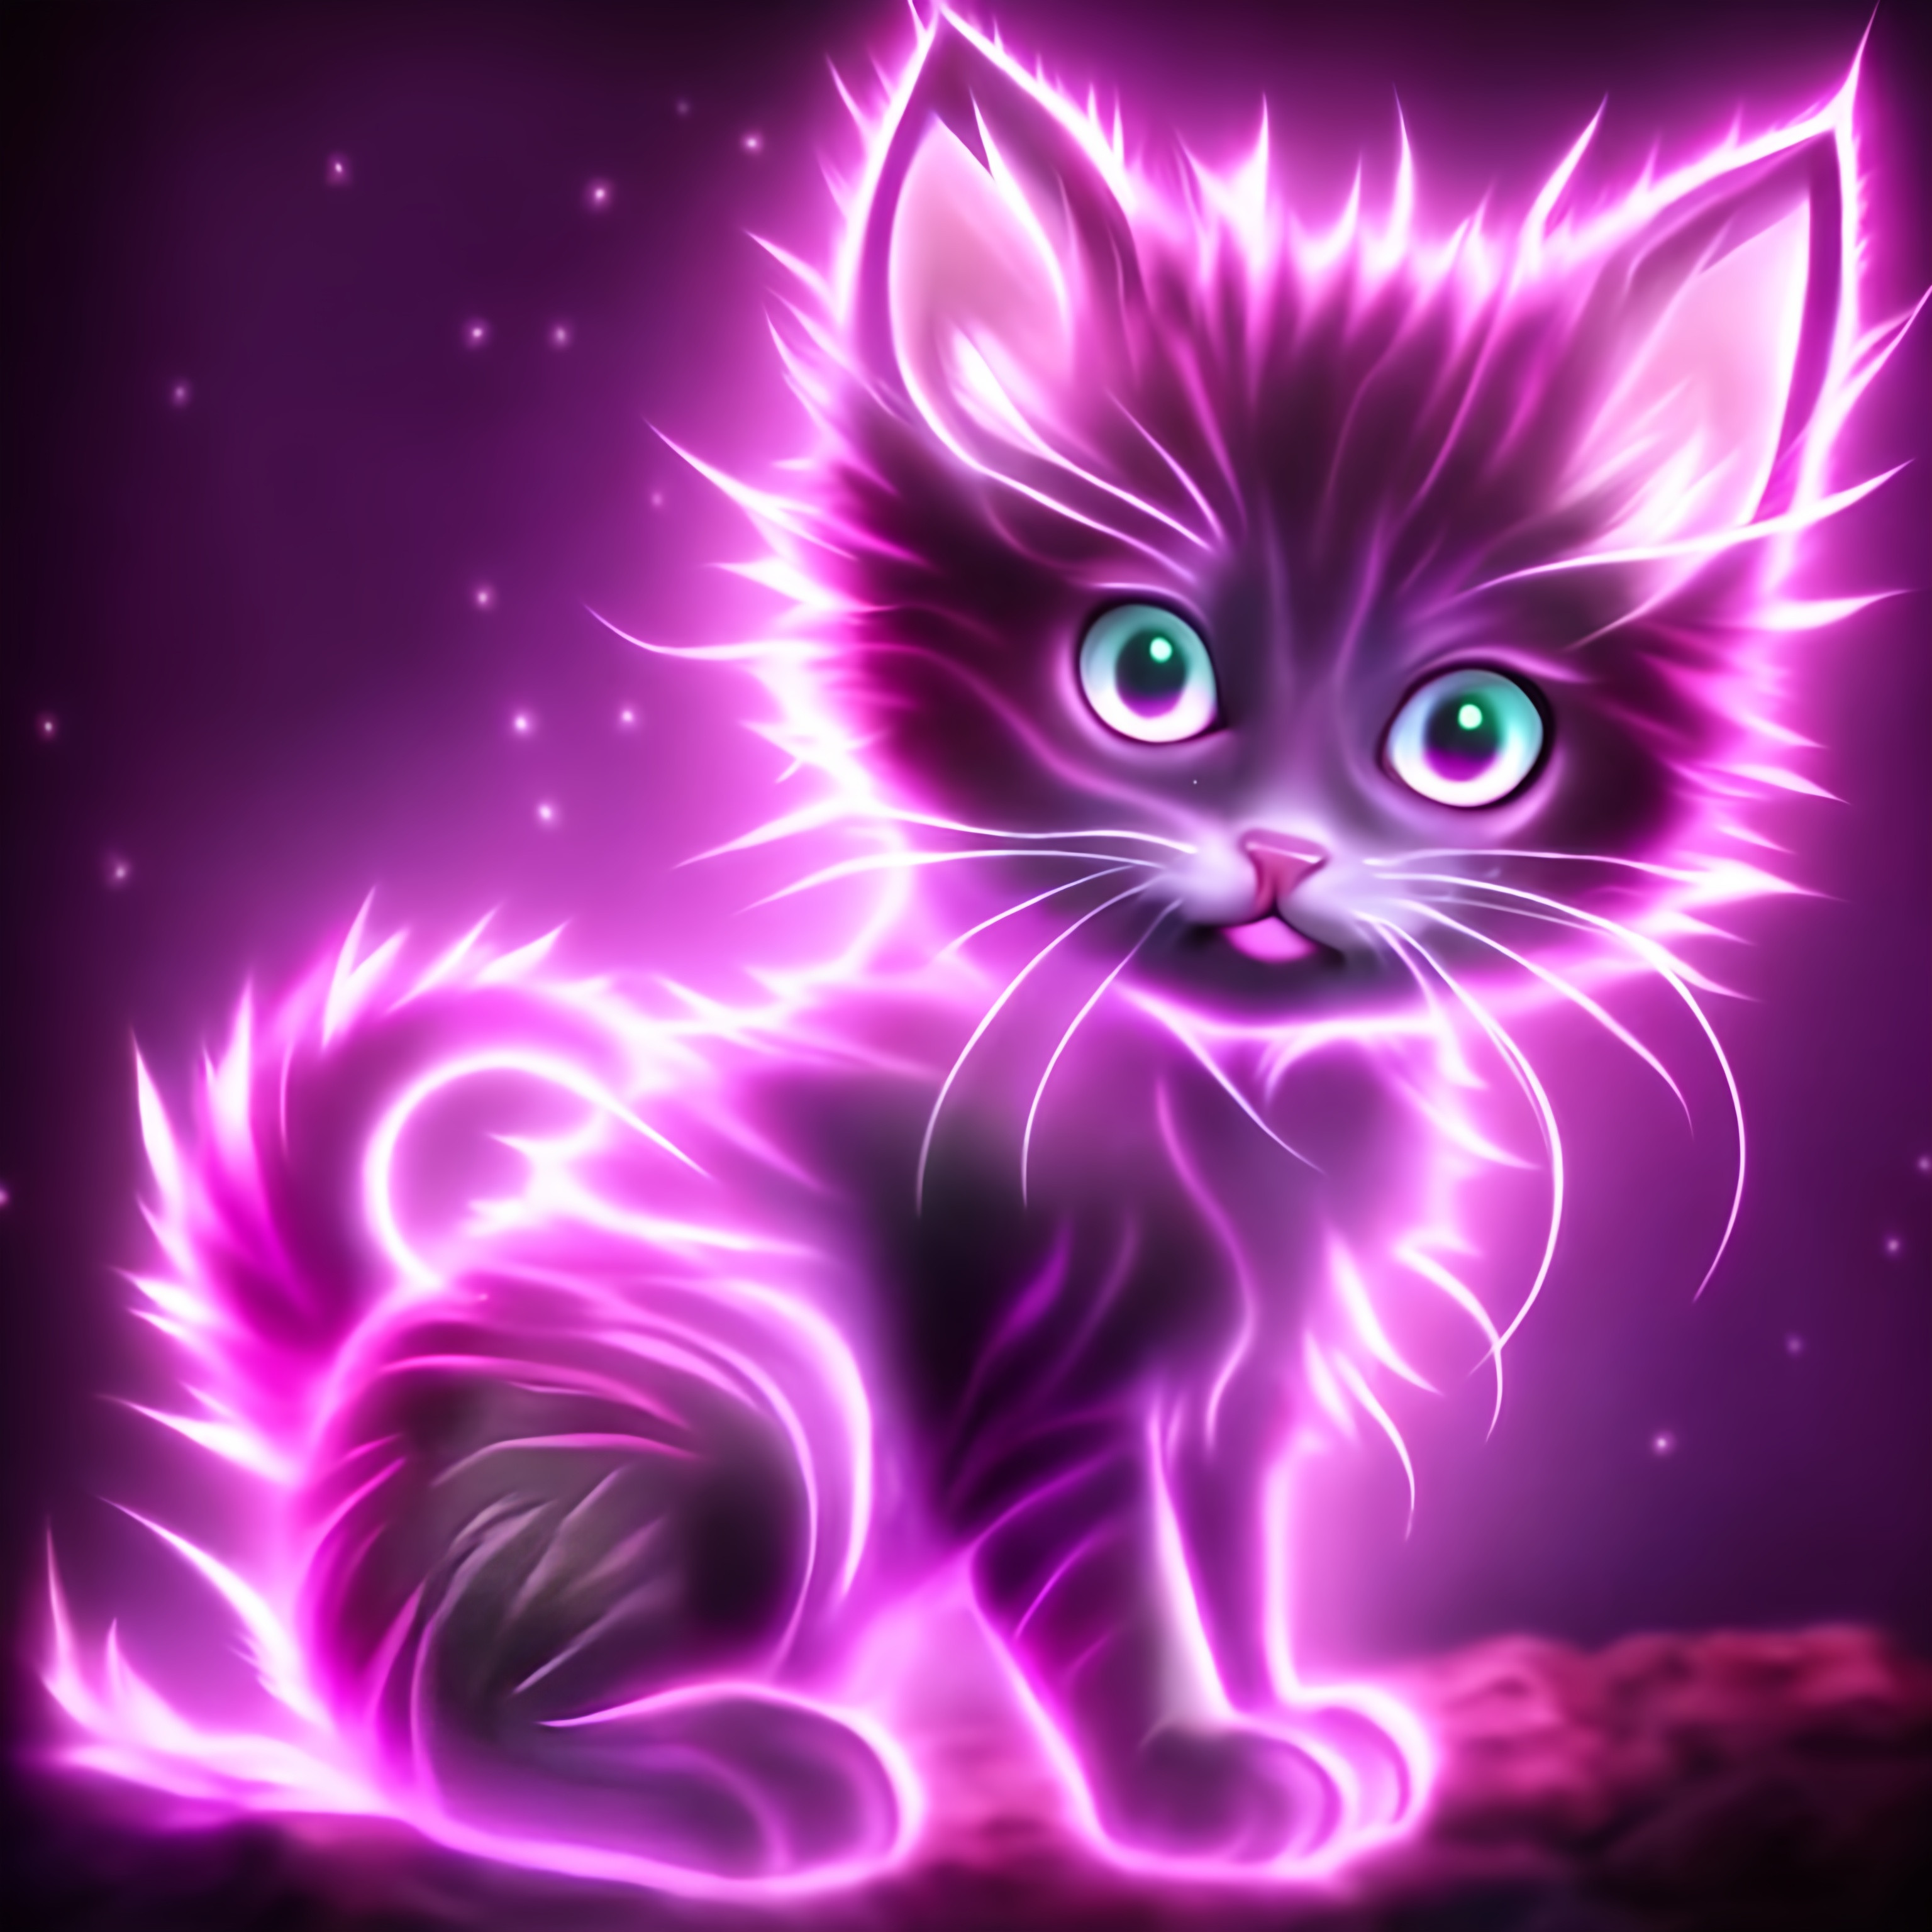 a glowing purple kitten anime | OpenArt